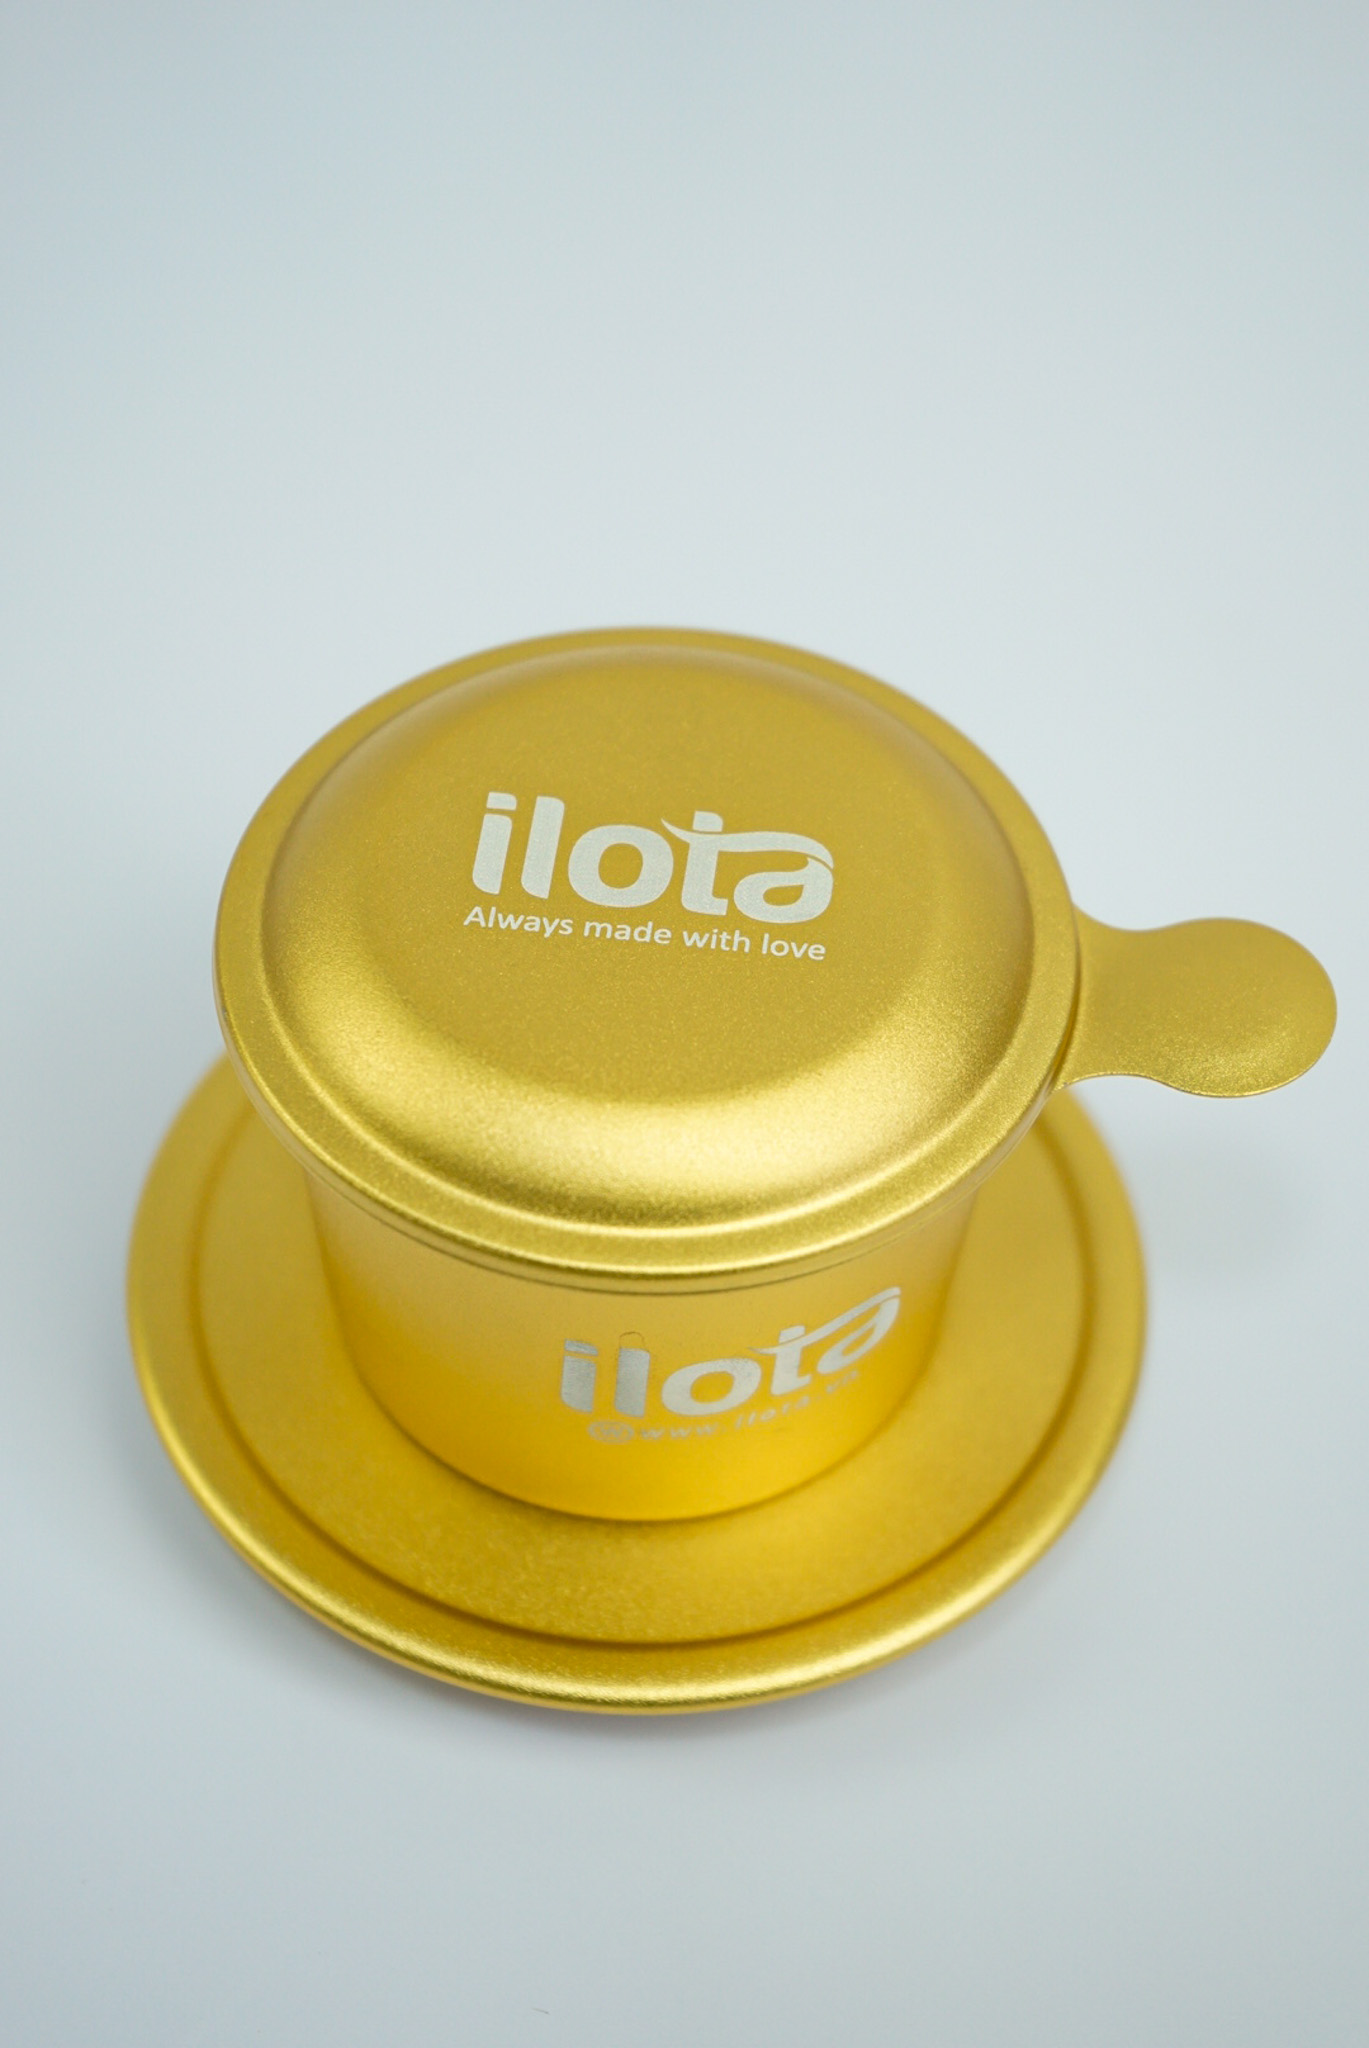 Phin nhôm cao cấp nhiều màu pha cà phê ILOTA dùng công nghệ Anode có độ bền vĩnh cửu, giữ nhiệt tốt